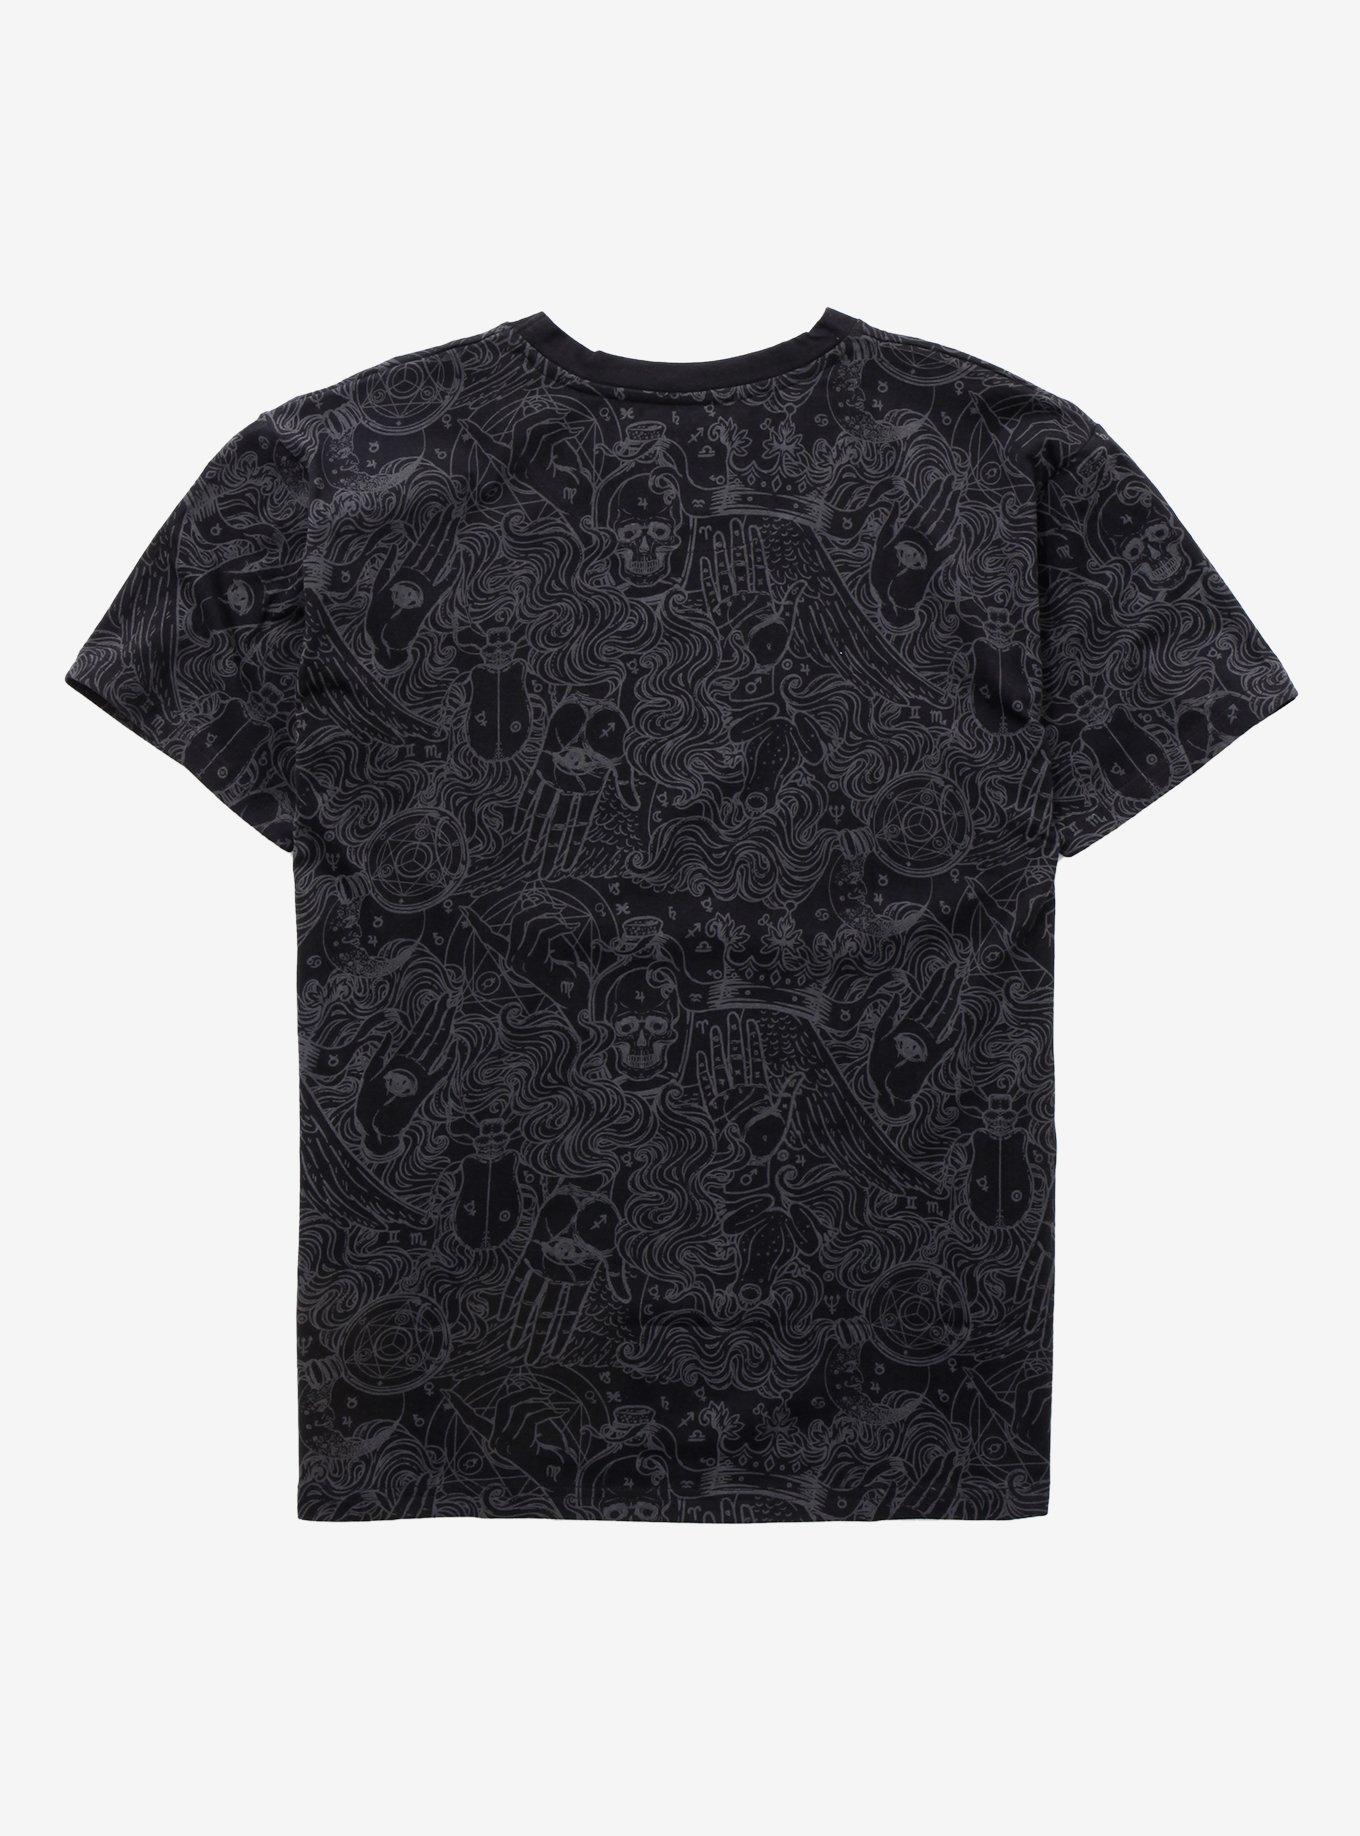 Alchemy Swirls Black & Grey T-Shirt, BLACK, alternate